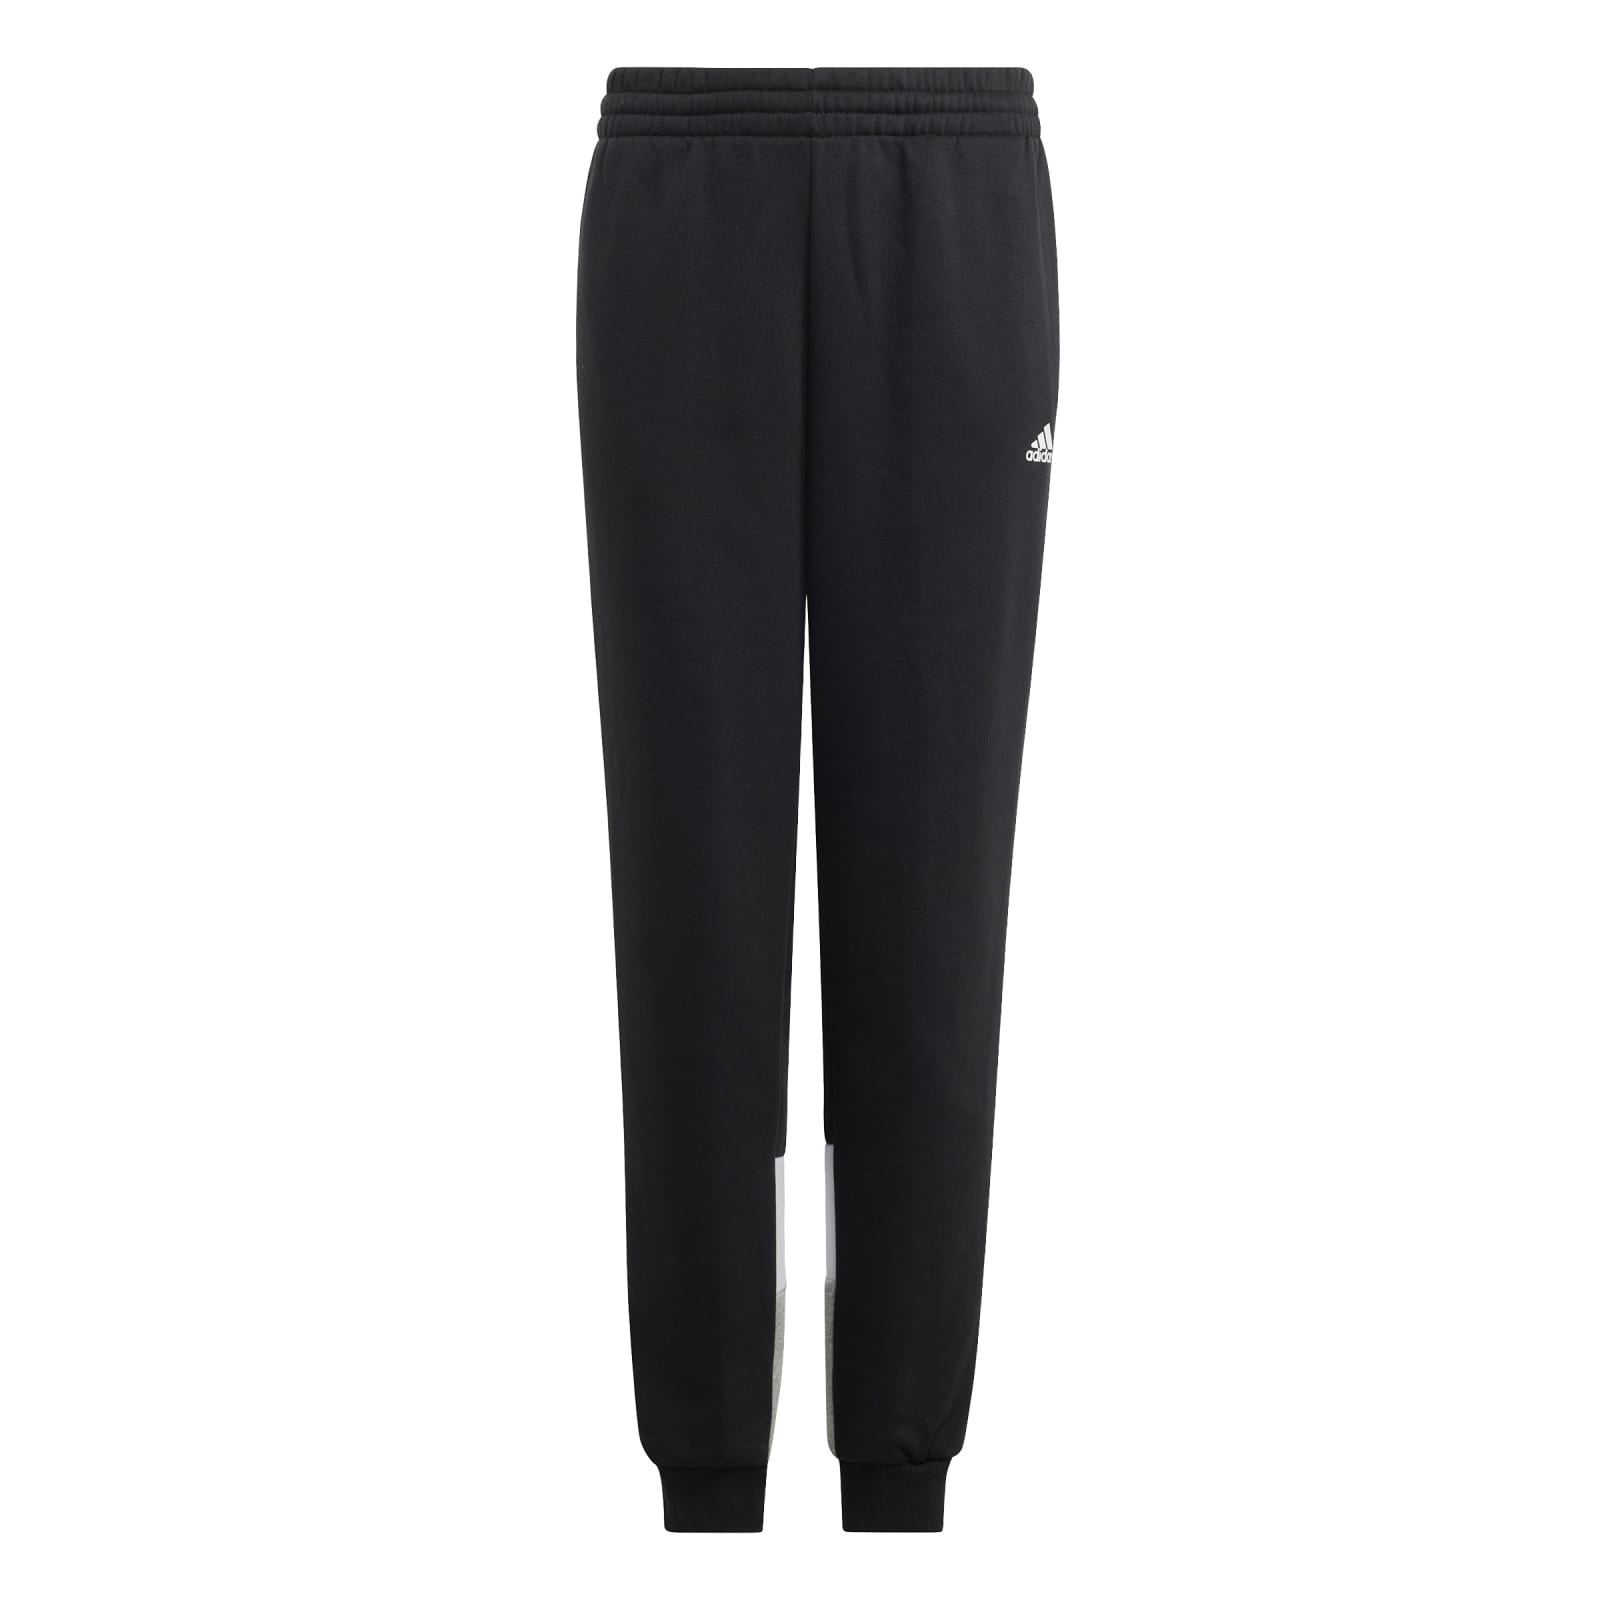 Fleece online Jungen schwarz/grau Trainingsanzug bestellen (Baumwollmix) Colourblock adidas